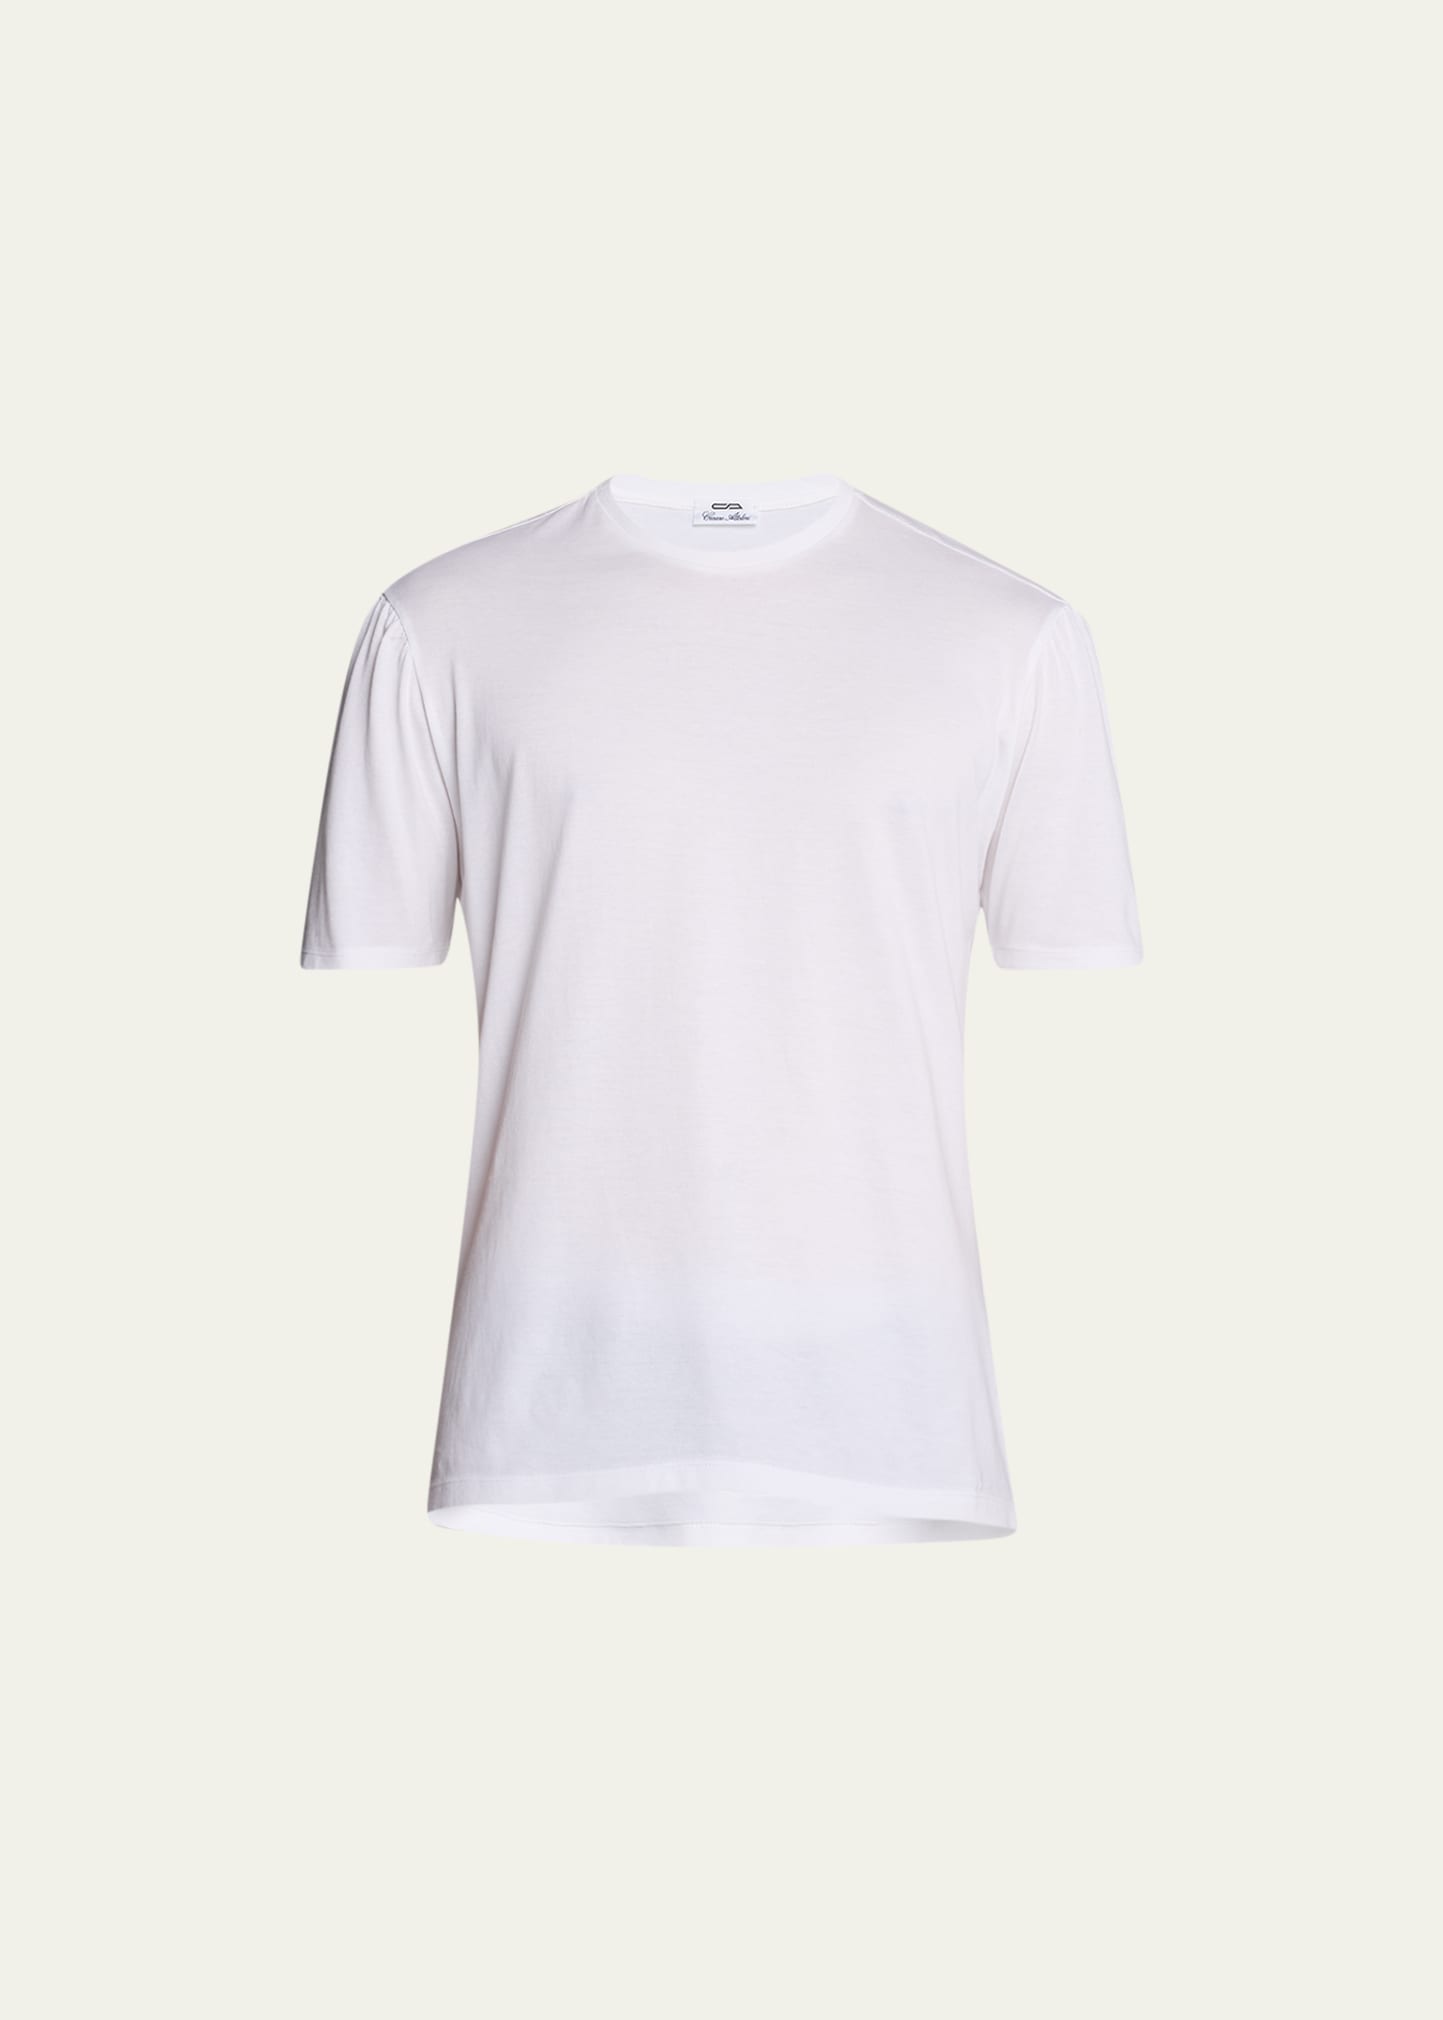 Cesare Attolini Men's Cotton Crew T-shirt In White